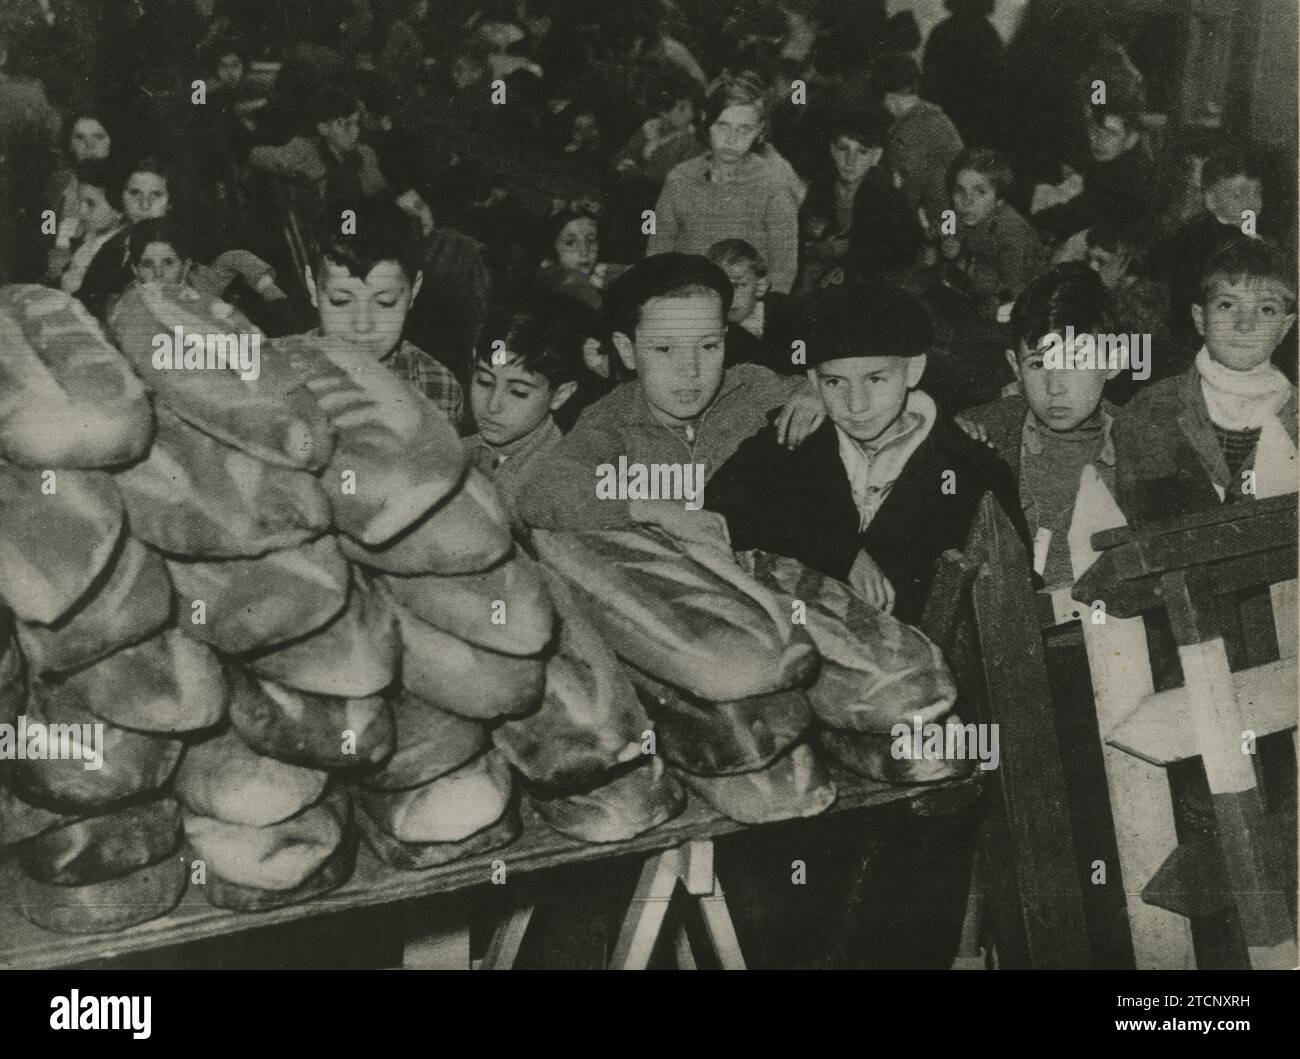 Frankreich, 20.06.1937. Die kleinen spanischen Flüchtlinge, die vor kurzem im Lager La Palisse angekommen sind, von wo aus sie in Gruppen zu ihren letzten Unterkünften abreisen werden. Quelle: Album/Archivo ABC Stockfoto